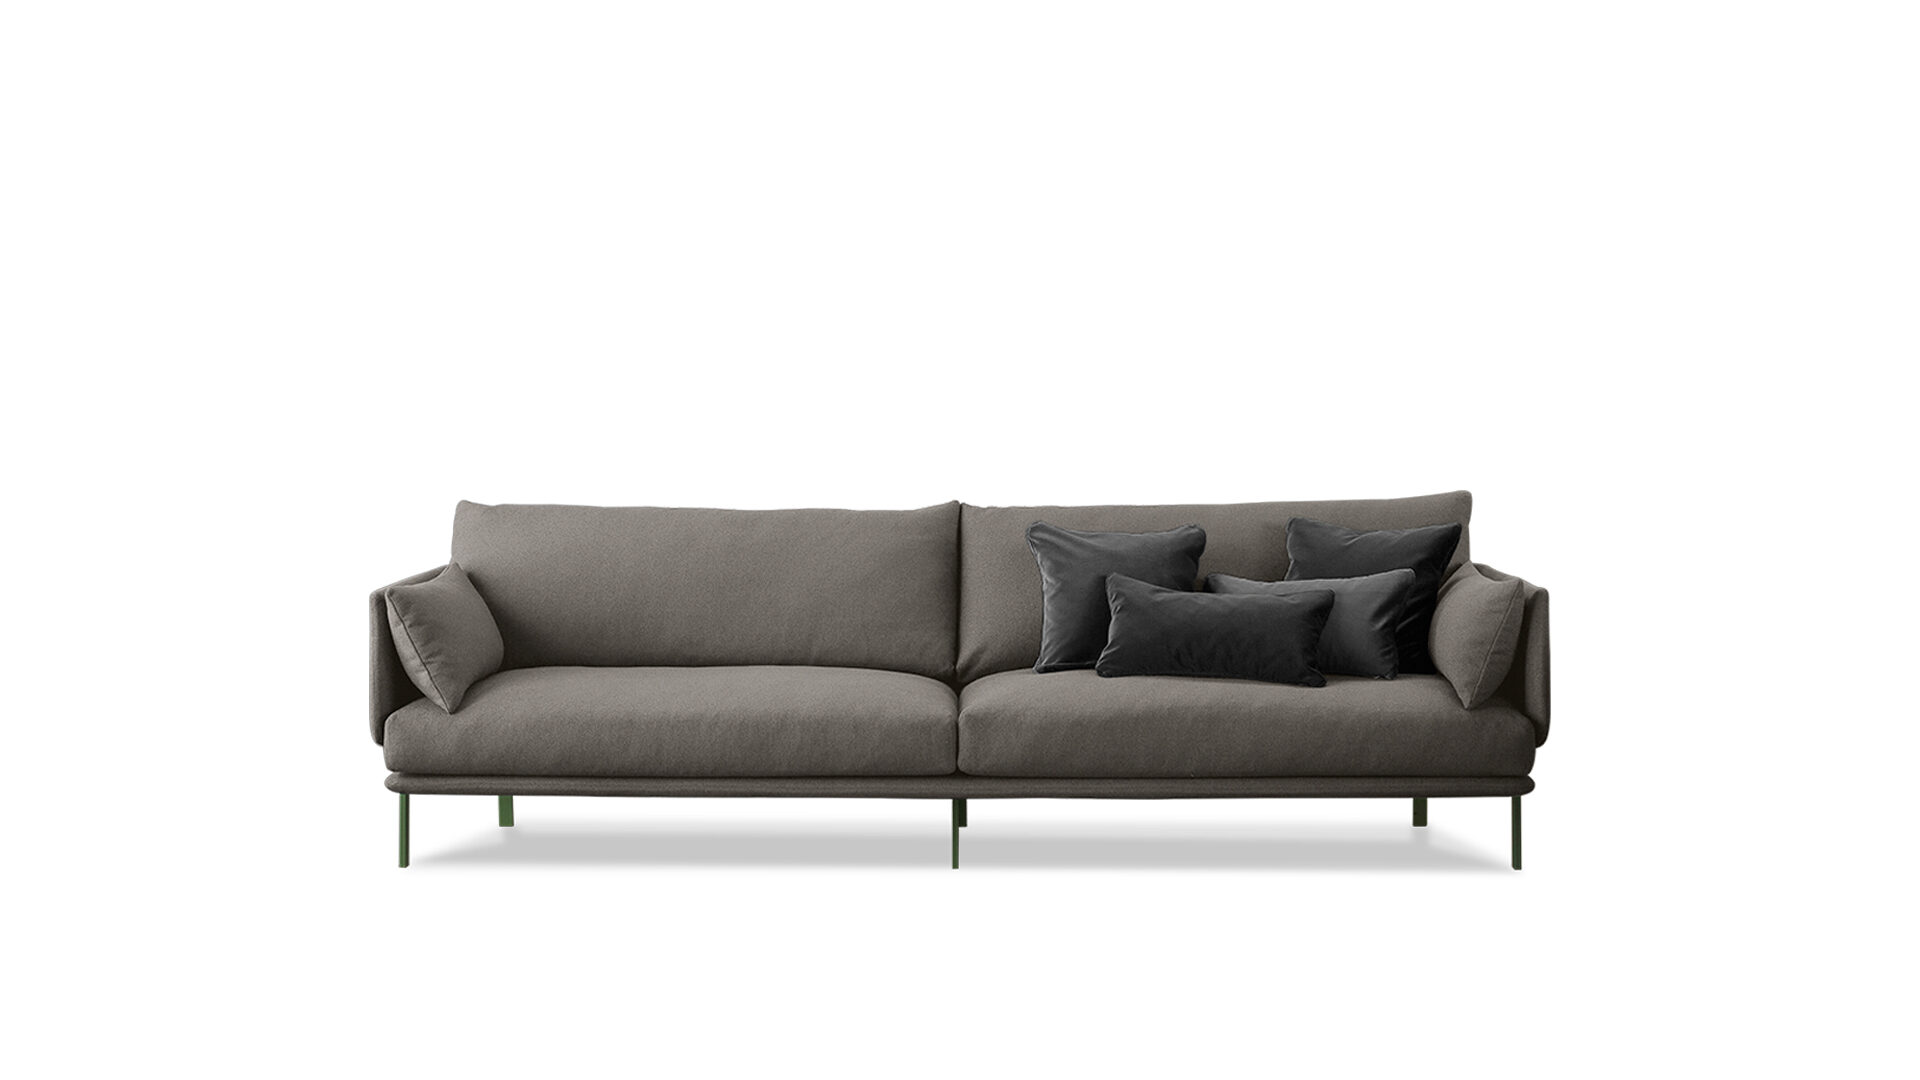 bonaldo-divani-structure-sofa-main-slider-01-1920x1080-1-jpg